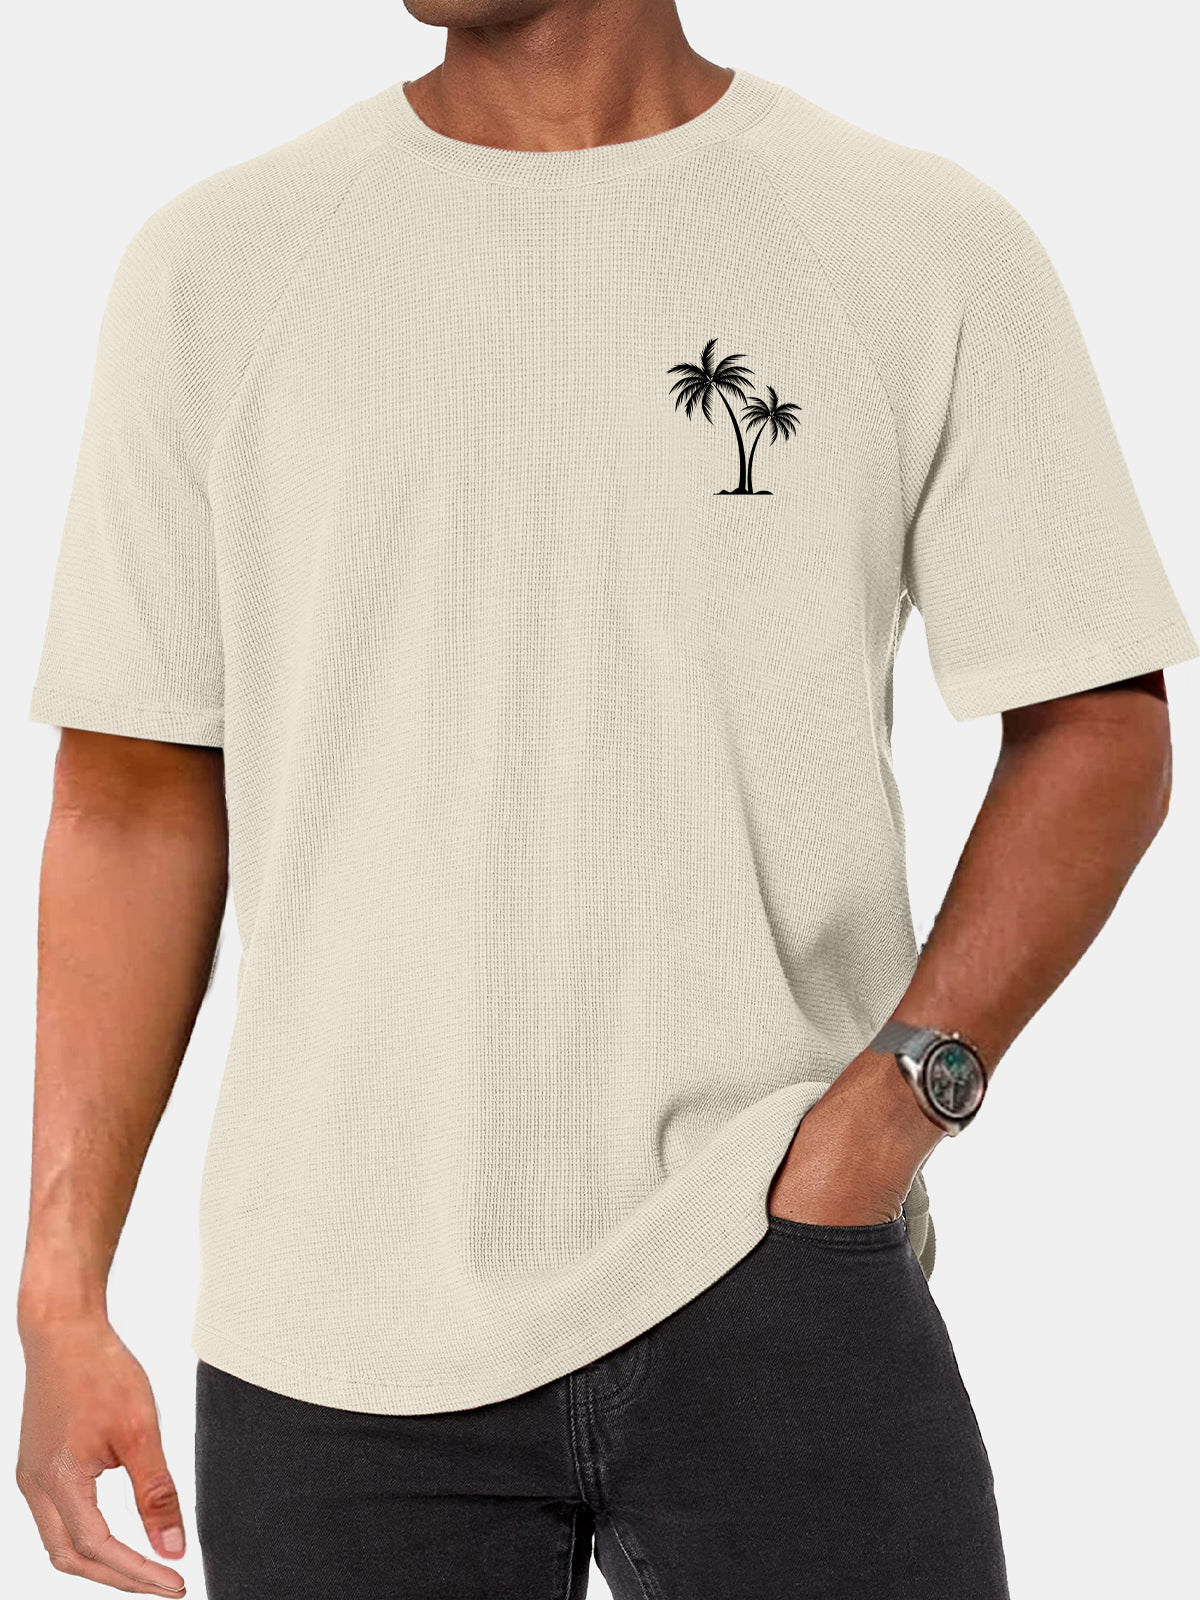 Men's Simple Hawaiian Coconut Print Waffle Raglan Short Sleeve T-shirt